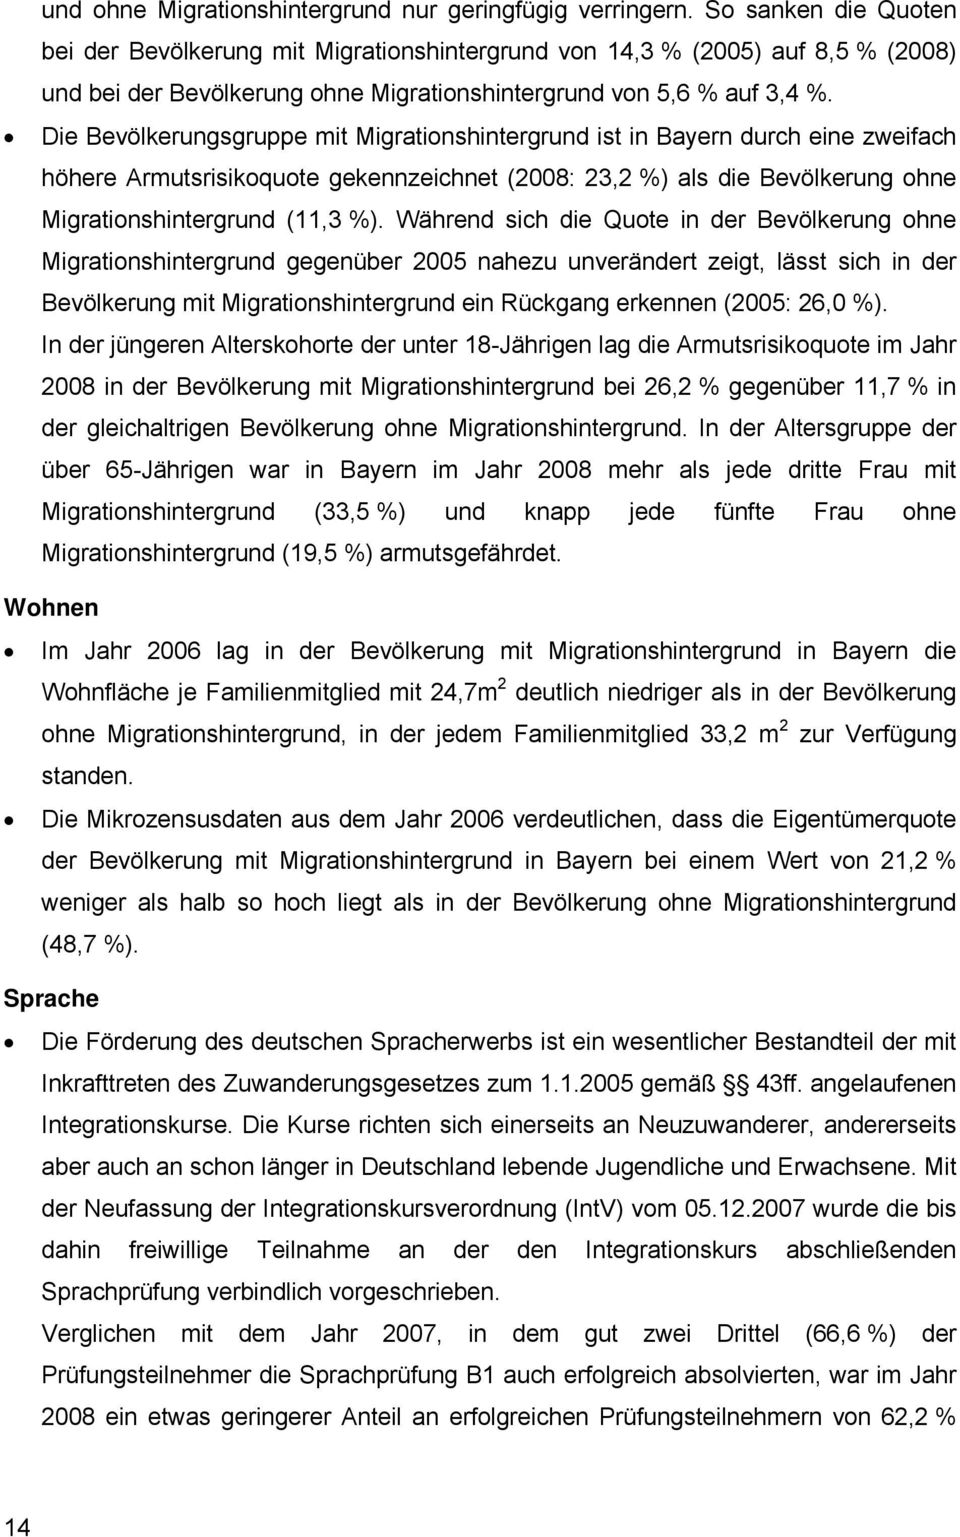 Die Bevölkerungsgruppe mit Migrationshintergrund ist in Bayern durch eine zweifach höhere Armutsrisikoquote gekennzeichnet (2008: 23,2 %) als die Bevölkerung ohne Migrationshintergrund (11,3 %).